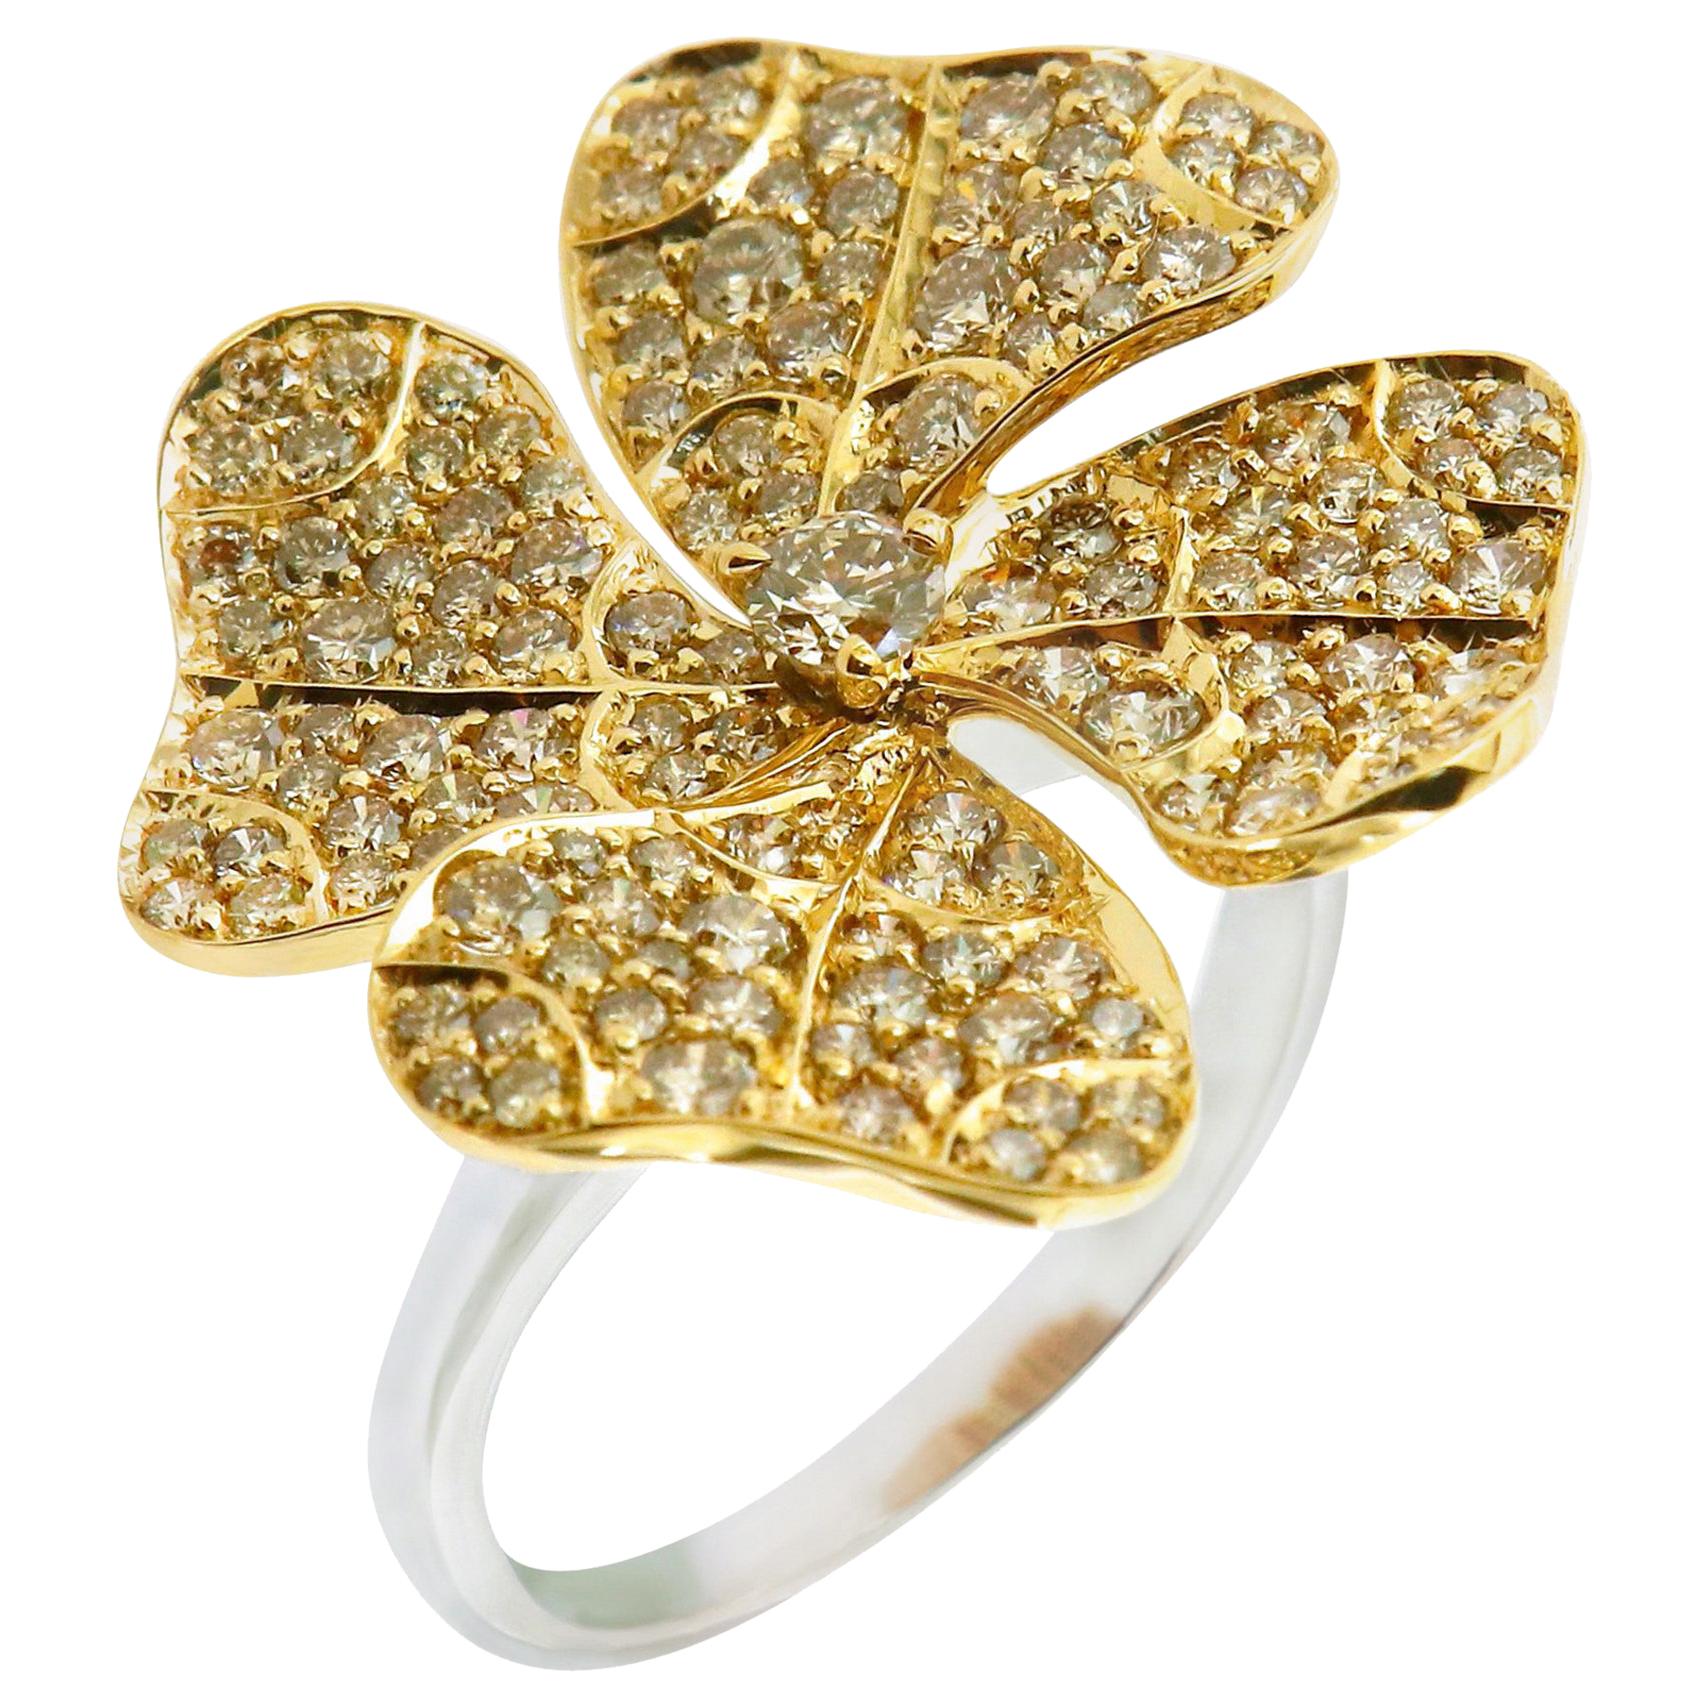 AENEA Bague fleur en or jaune 18 carats avec diamants bruns fantaisie E-F/VVS et diamants blancs